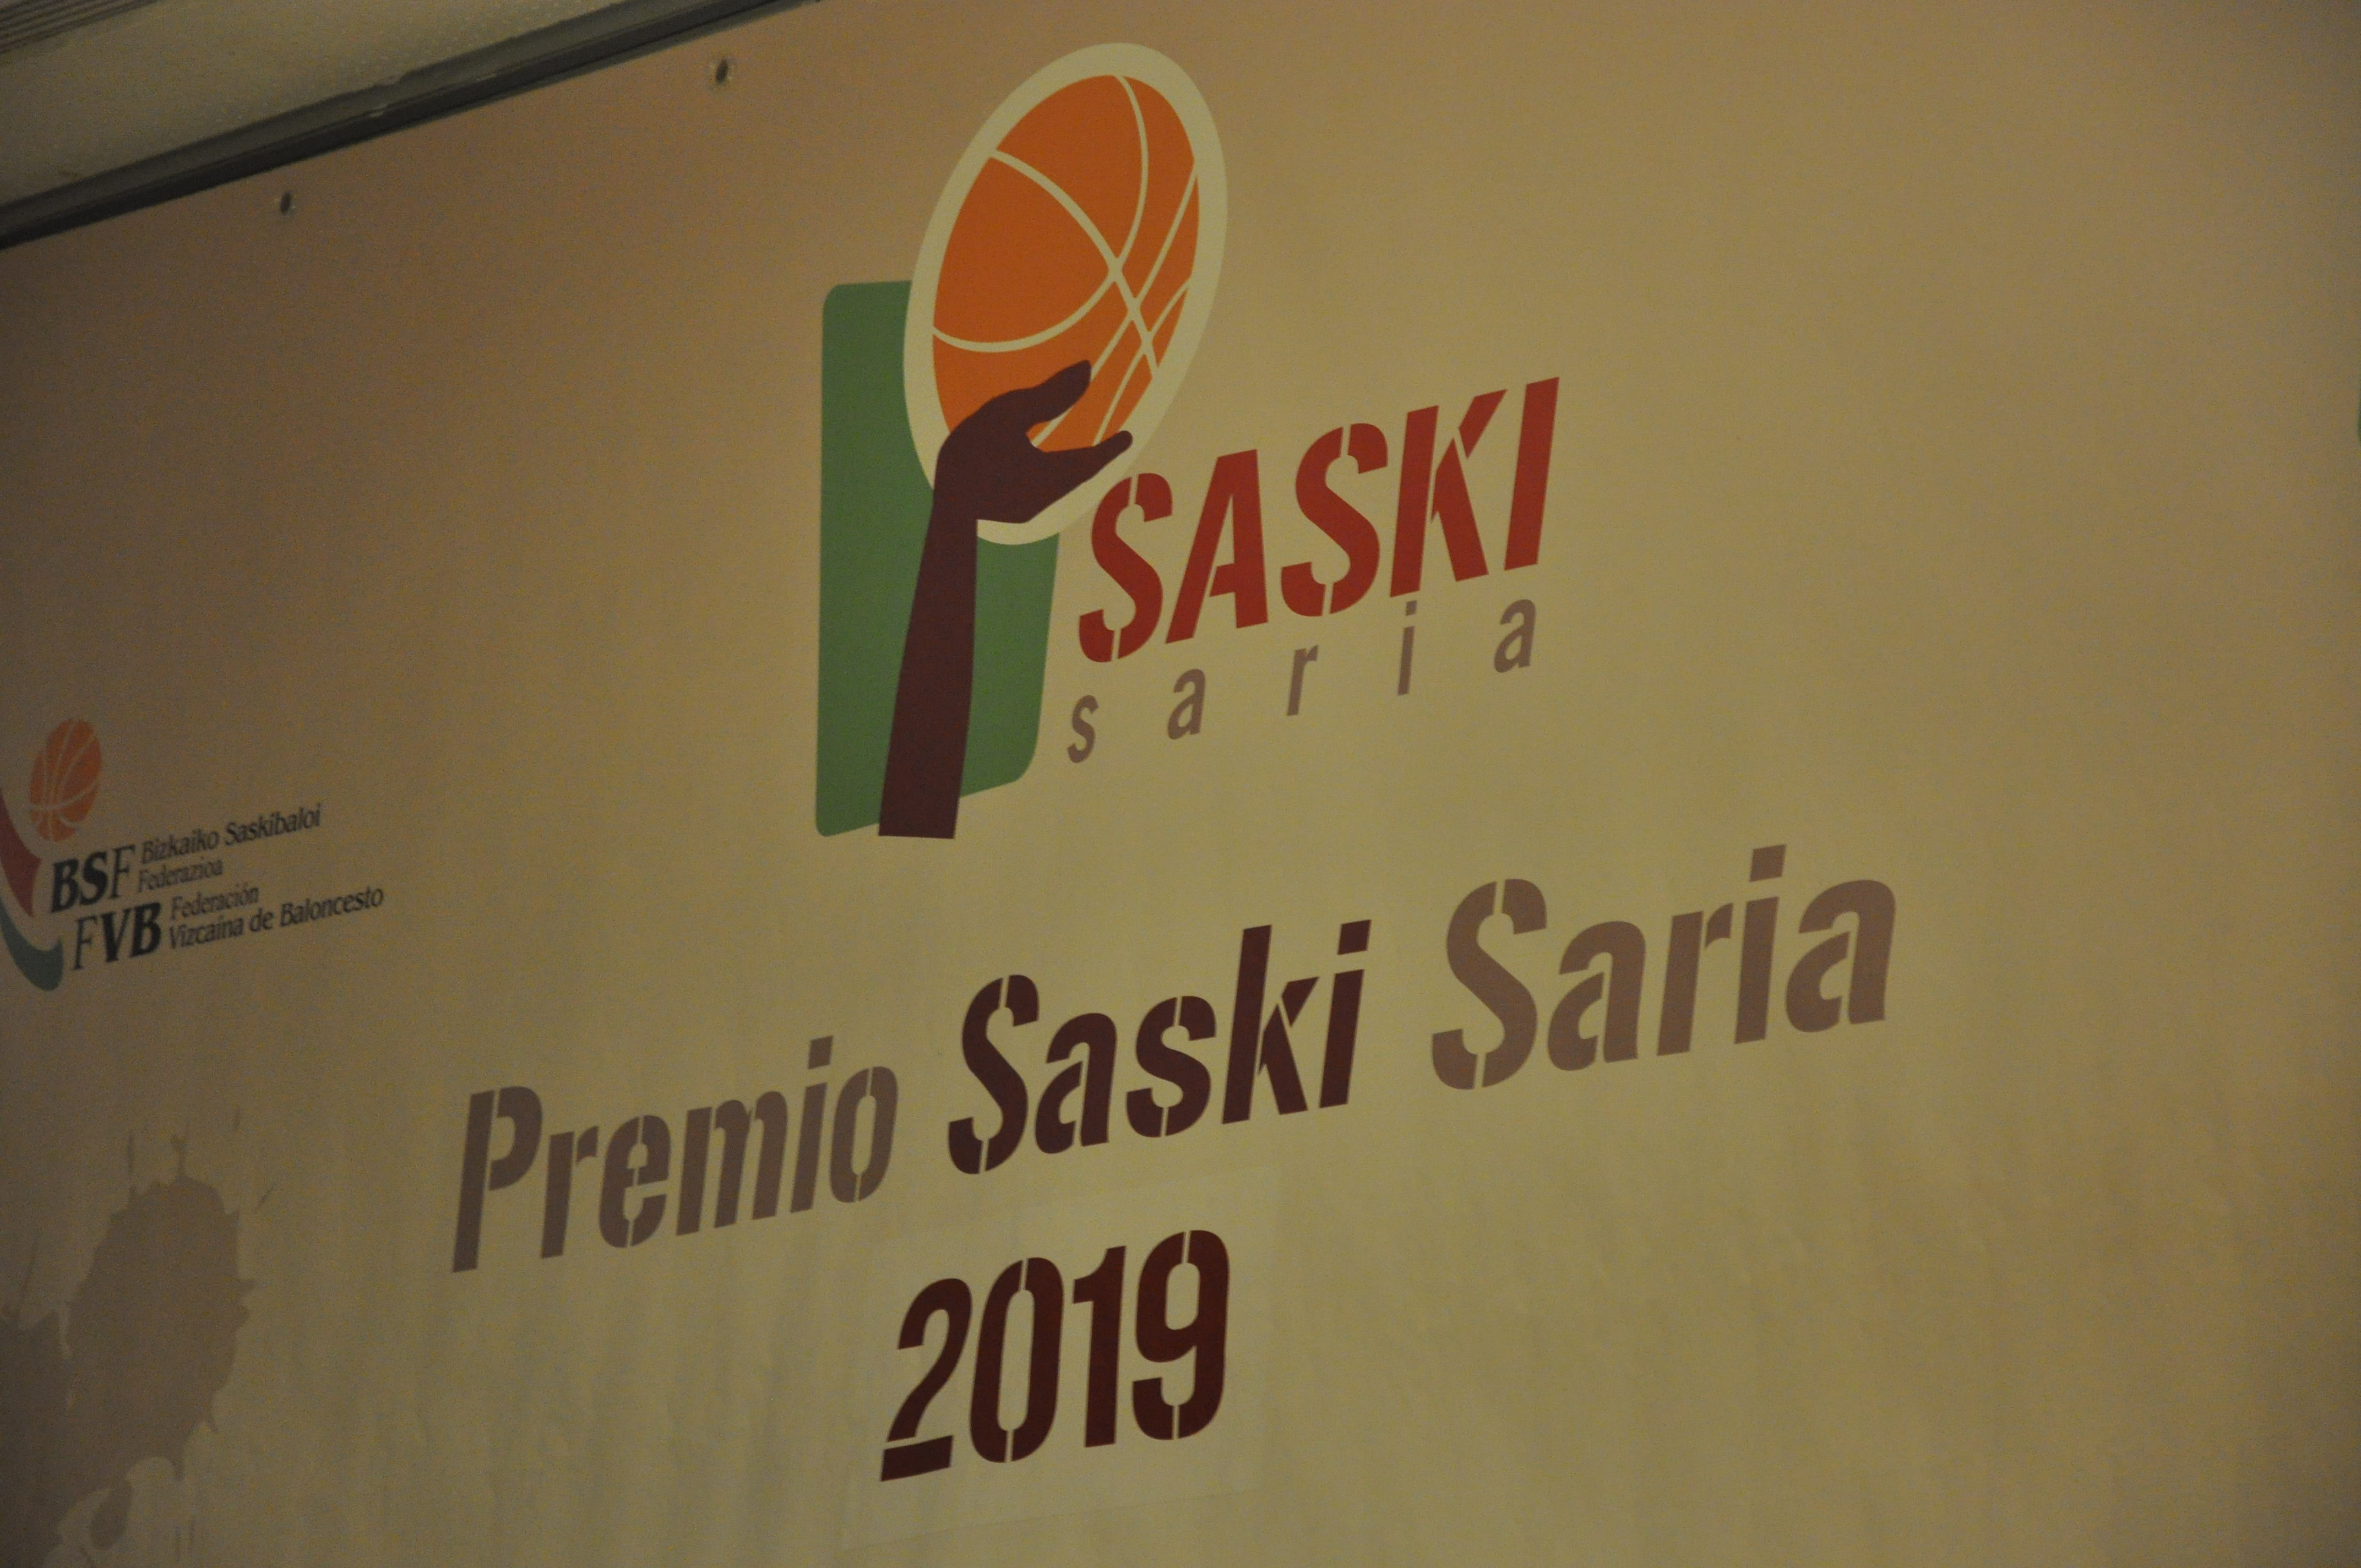 Premios Saski Saria 2019